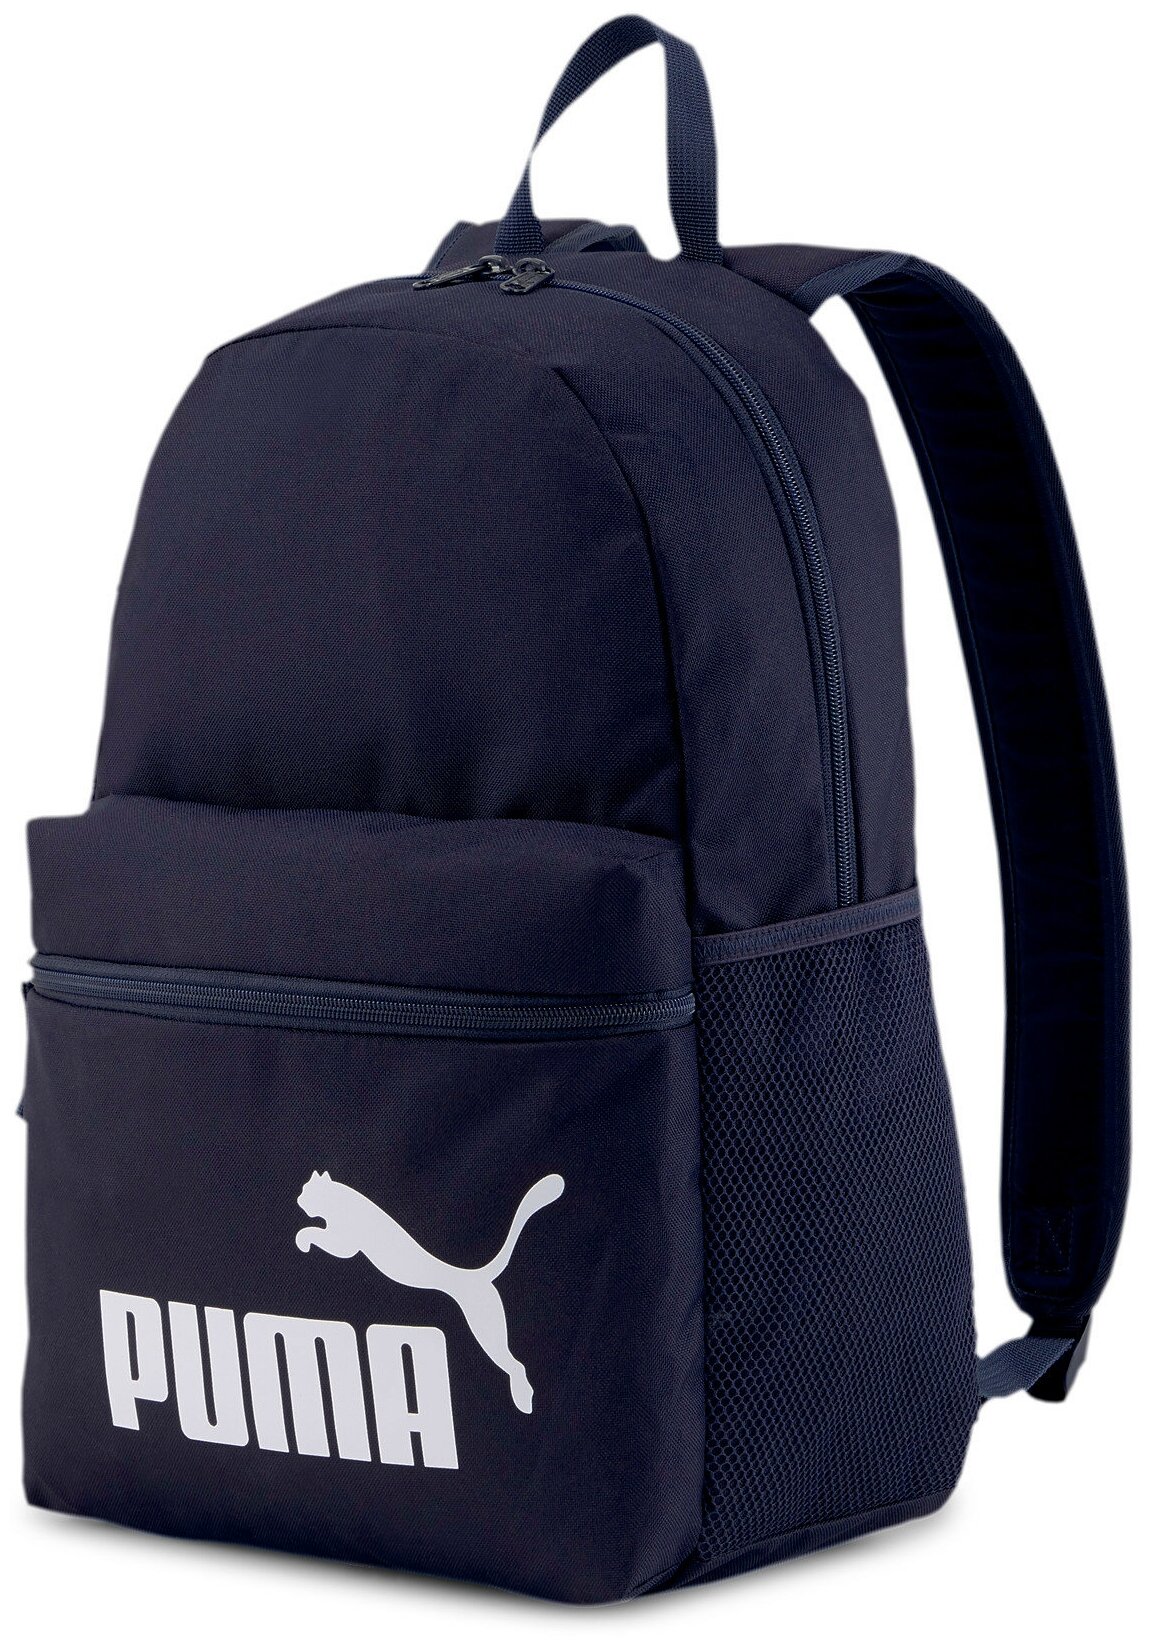 Рюкзак Puma Phase 07548743, р-р one size, Темно-синий